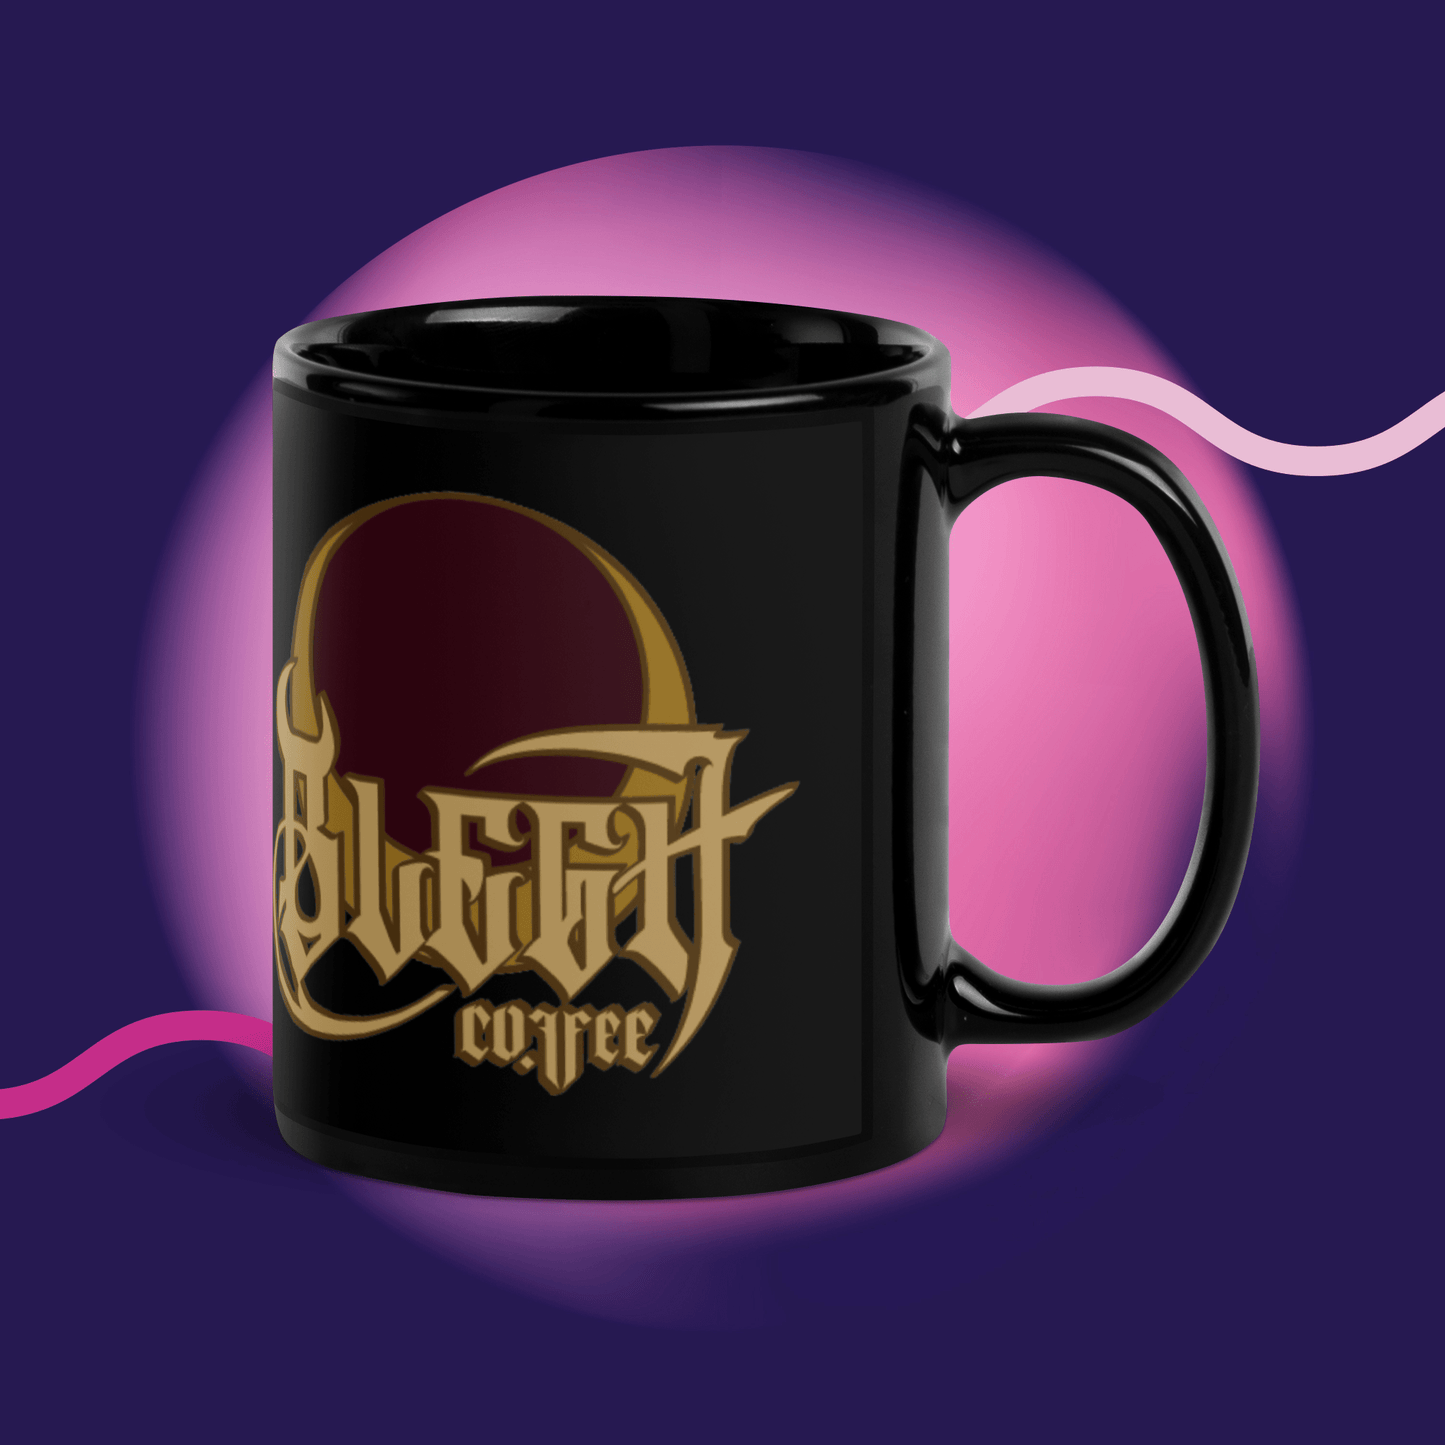 BLEGH Mug Cream - BLEGH Coffee Co.